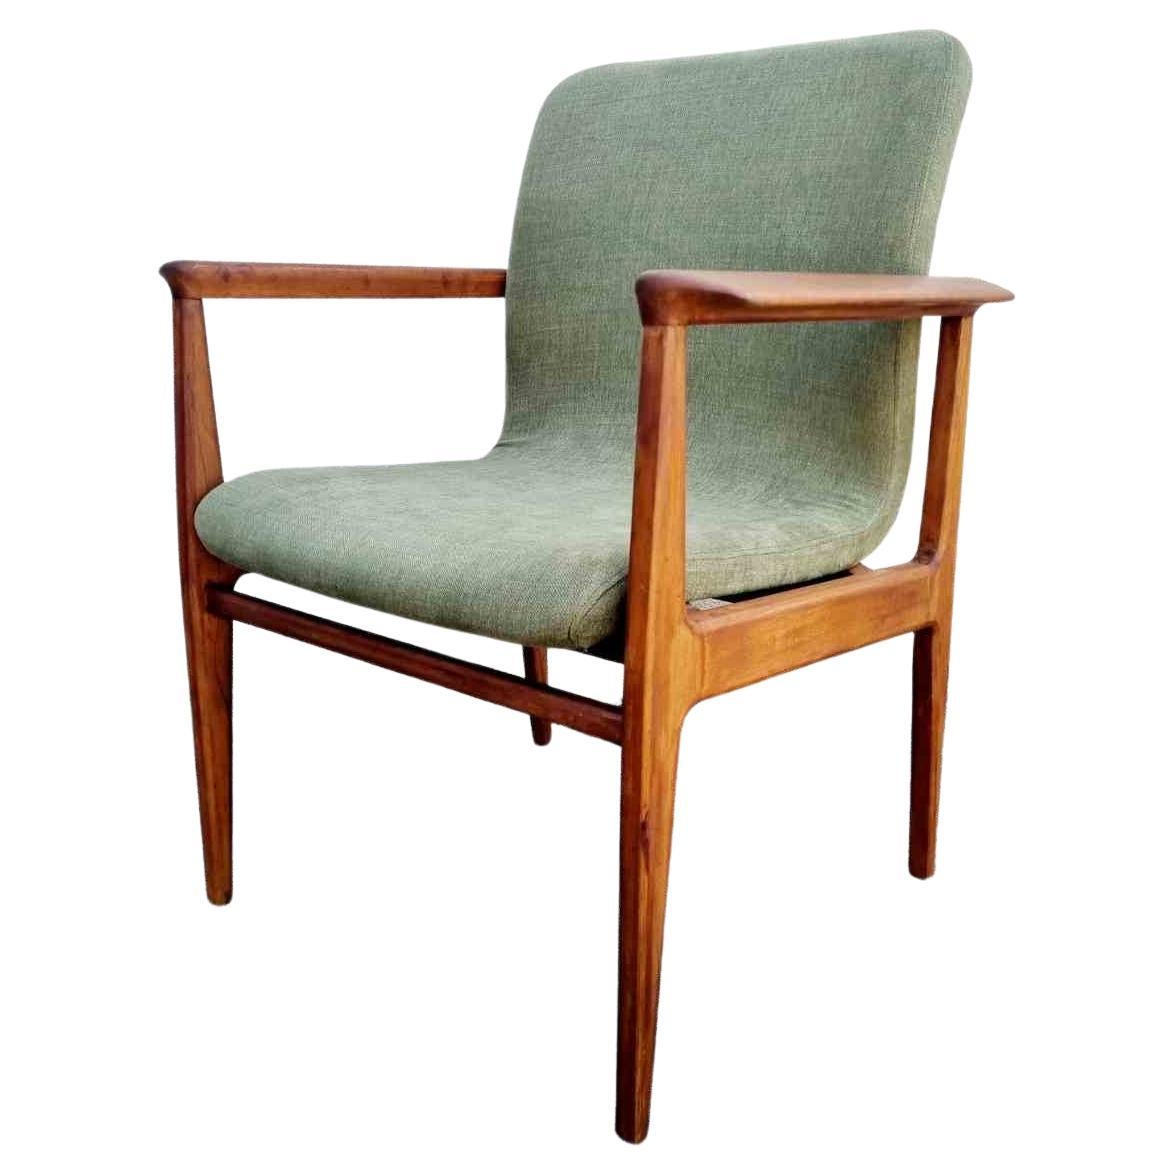 Moderner Sessel aus der Mitte des Jahrhunderts, hergestellt von Anonima Castelli in den 60er Jahren.
Sessel aus massiver Buche.
Es wurde neu gepolstert

Produziert von Anonima Castelli um 1960, siehe Label auf dem Foto.

Ausgezeichneter Zustand,